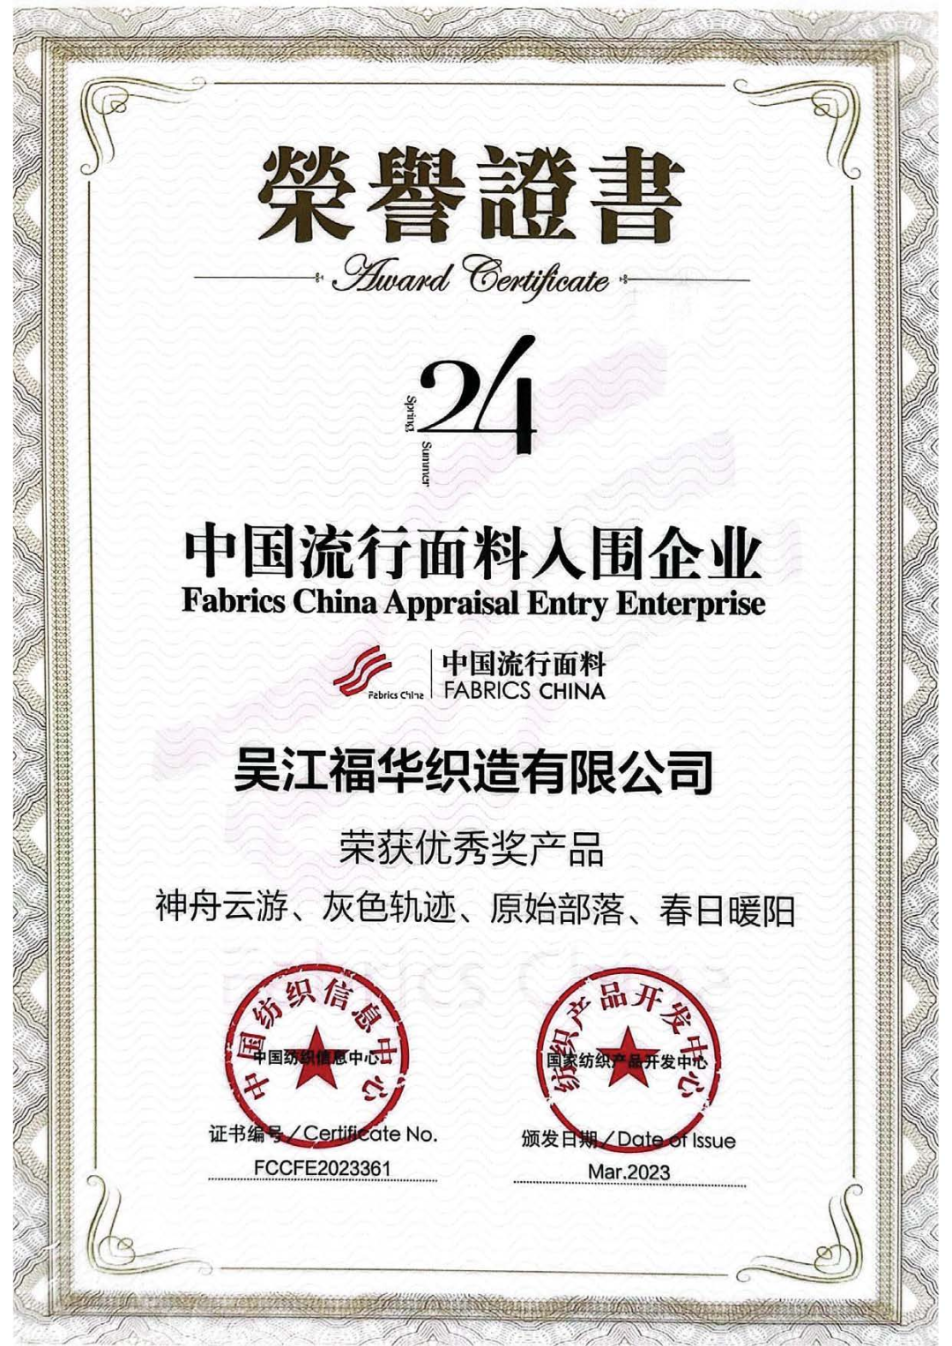 喜報|福華榮獲中國流行面料優秀獎、蘇州市紡織絲綢科學技術進步獎